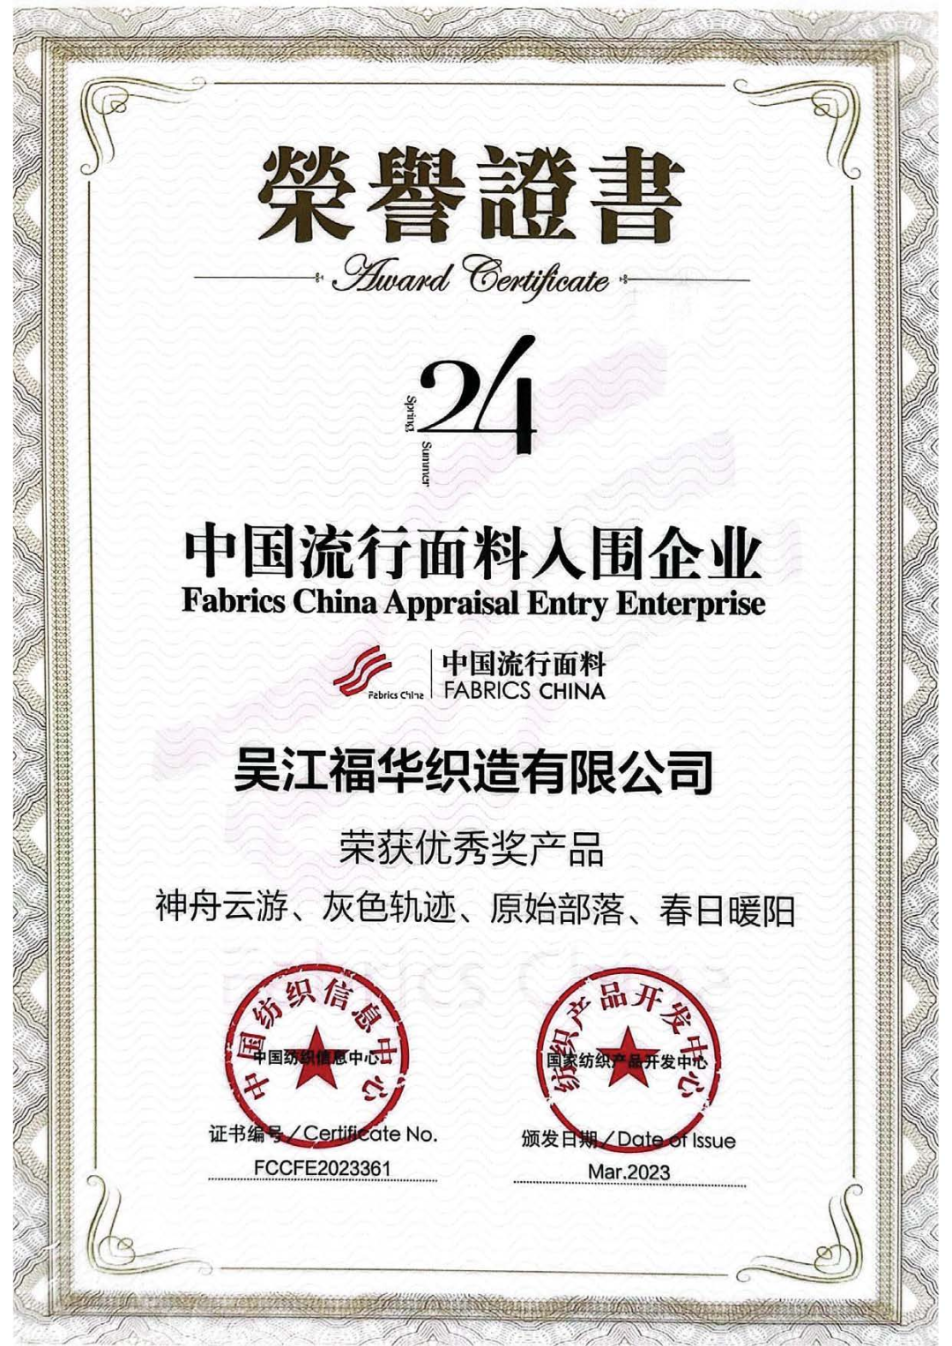 喜報|福華榮獲中國流行面料優秀獎、蘇州市紡織絲綢科學技術進步獎